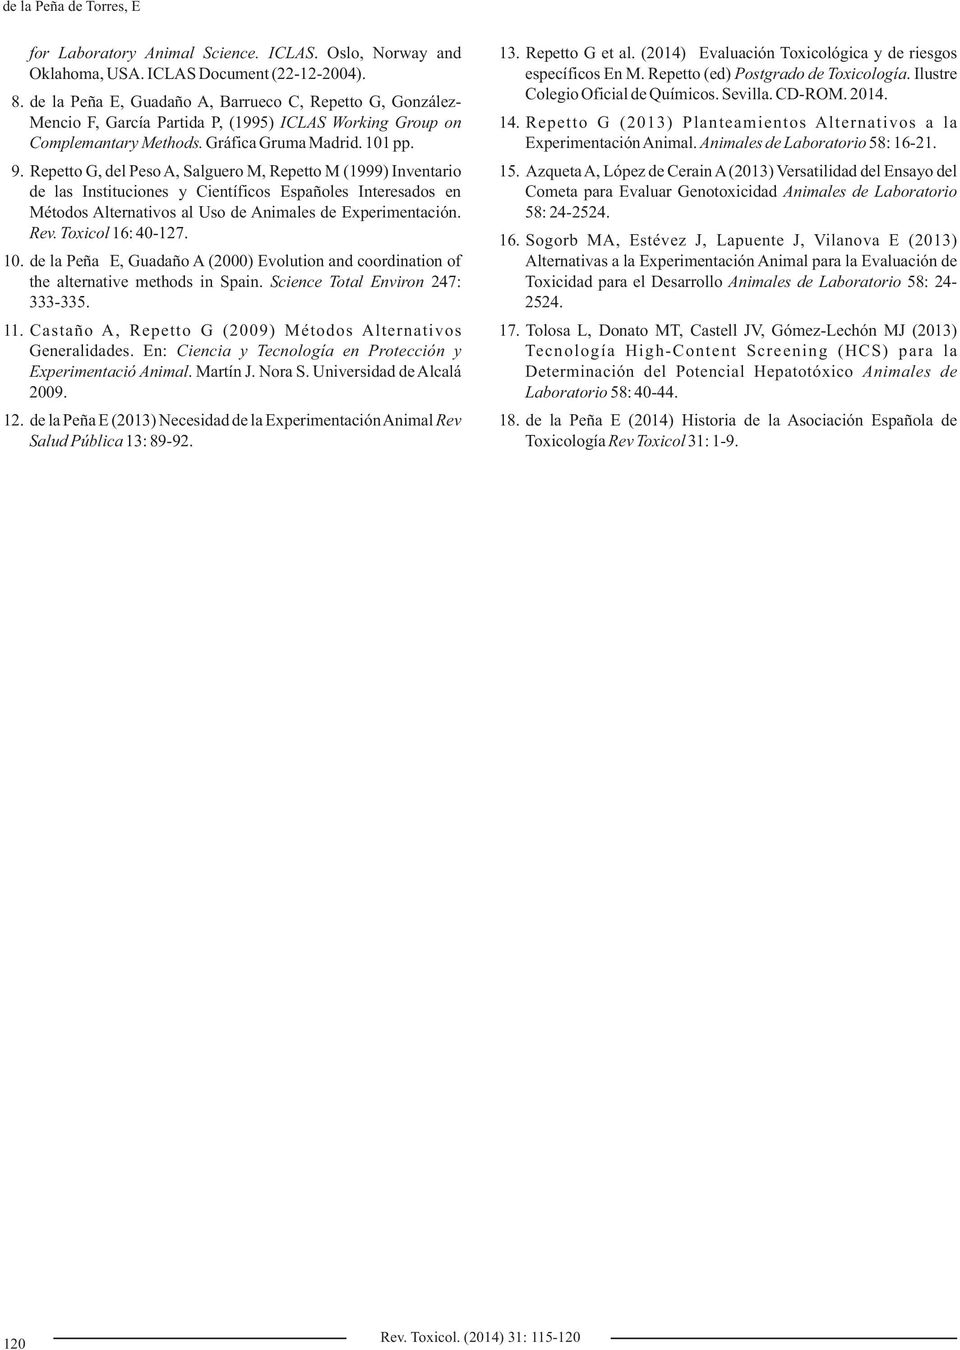 Repetto G, del Peso A, Salguero M, Repetto M (1999) Inventario de las Instituciones y Científicos Españoles Interesados en Métodos Alternativos al Uso de Animales de Experimentación. Rev.